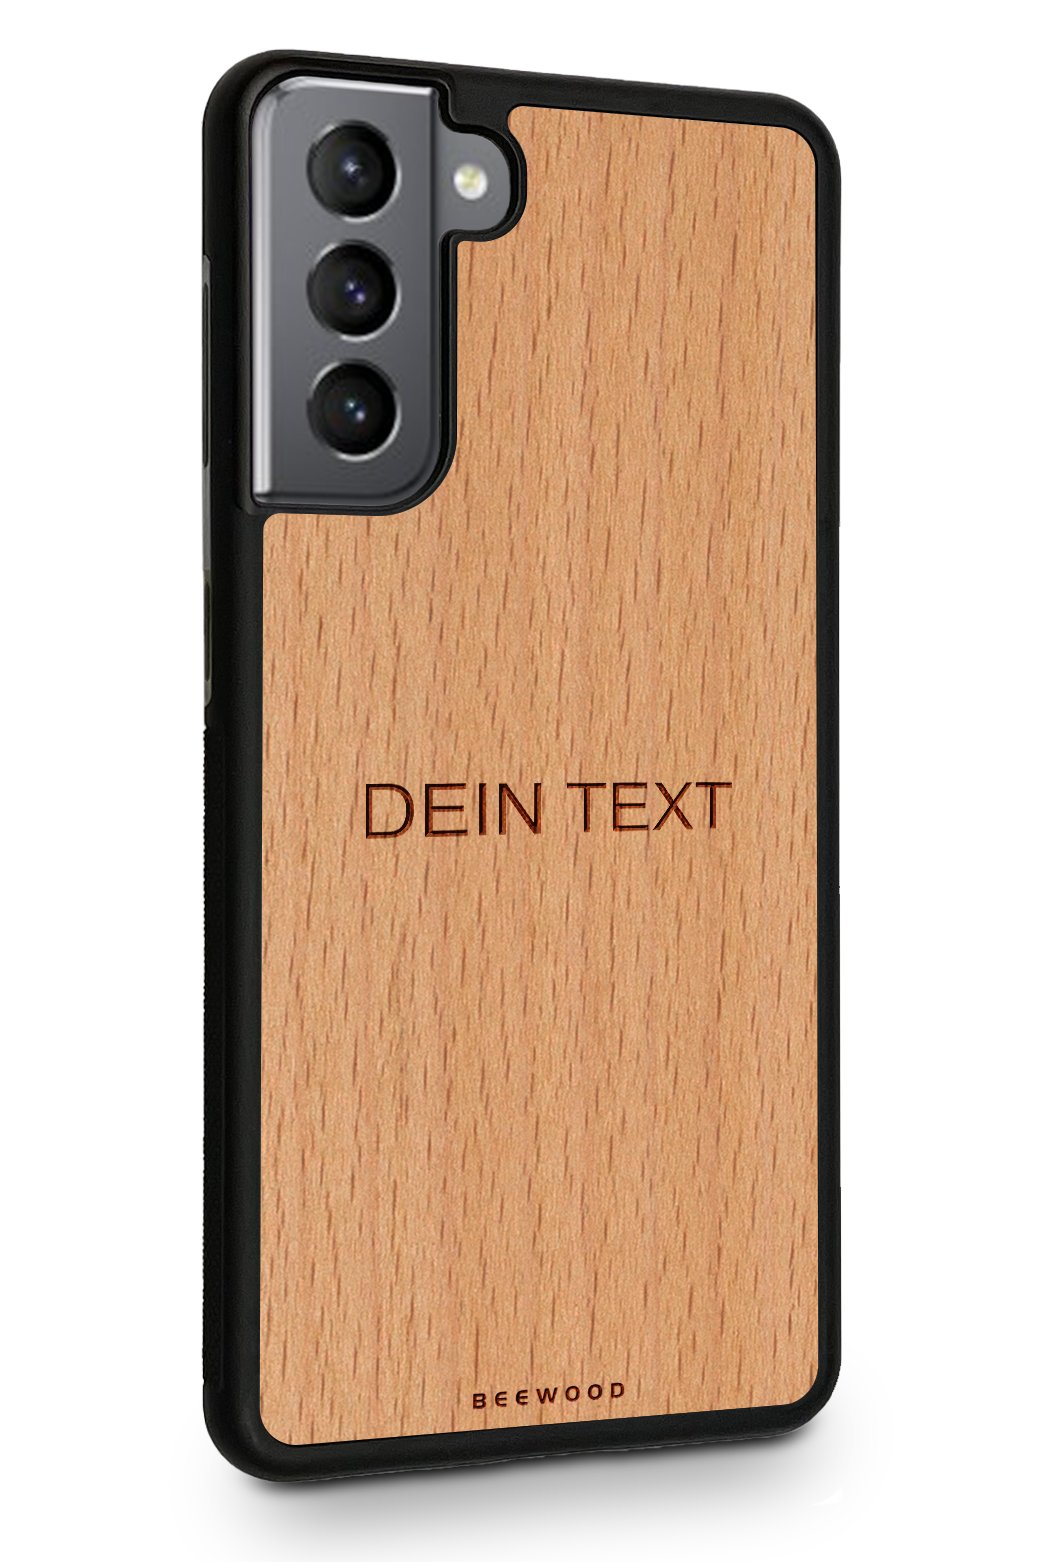 Holzhülle Samsung - BeeWood UNO - MIT DEINEM TEXT